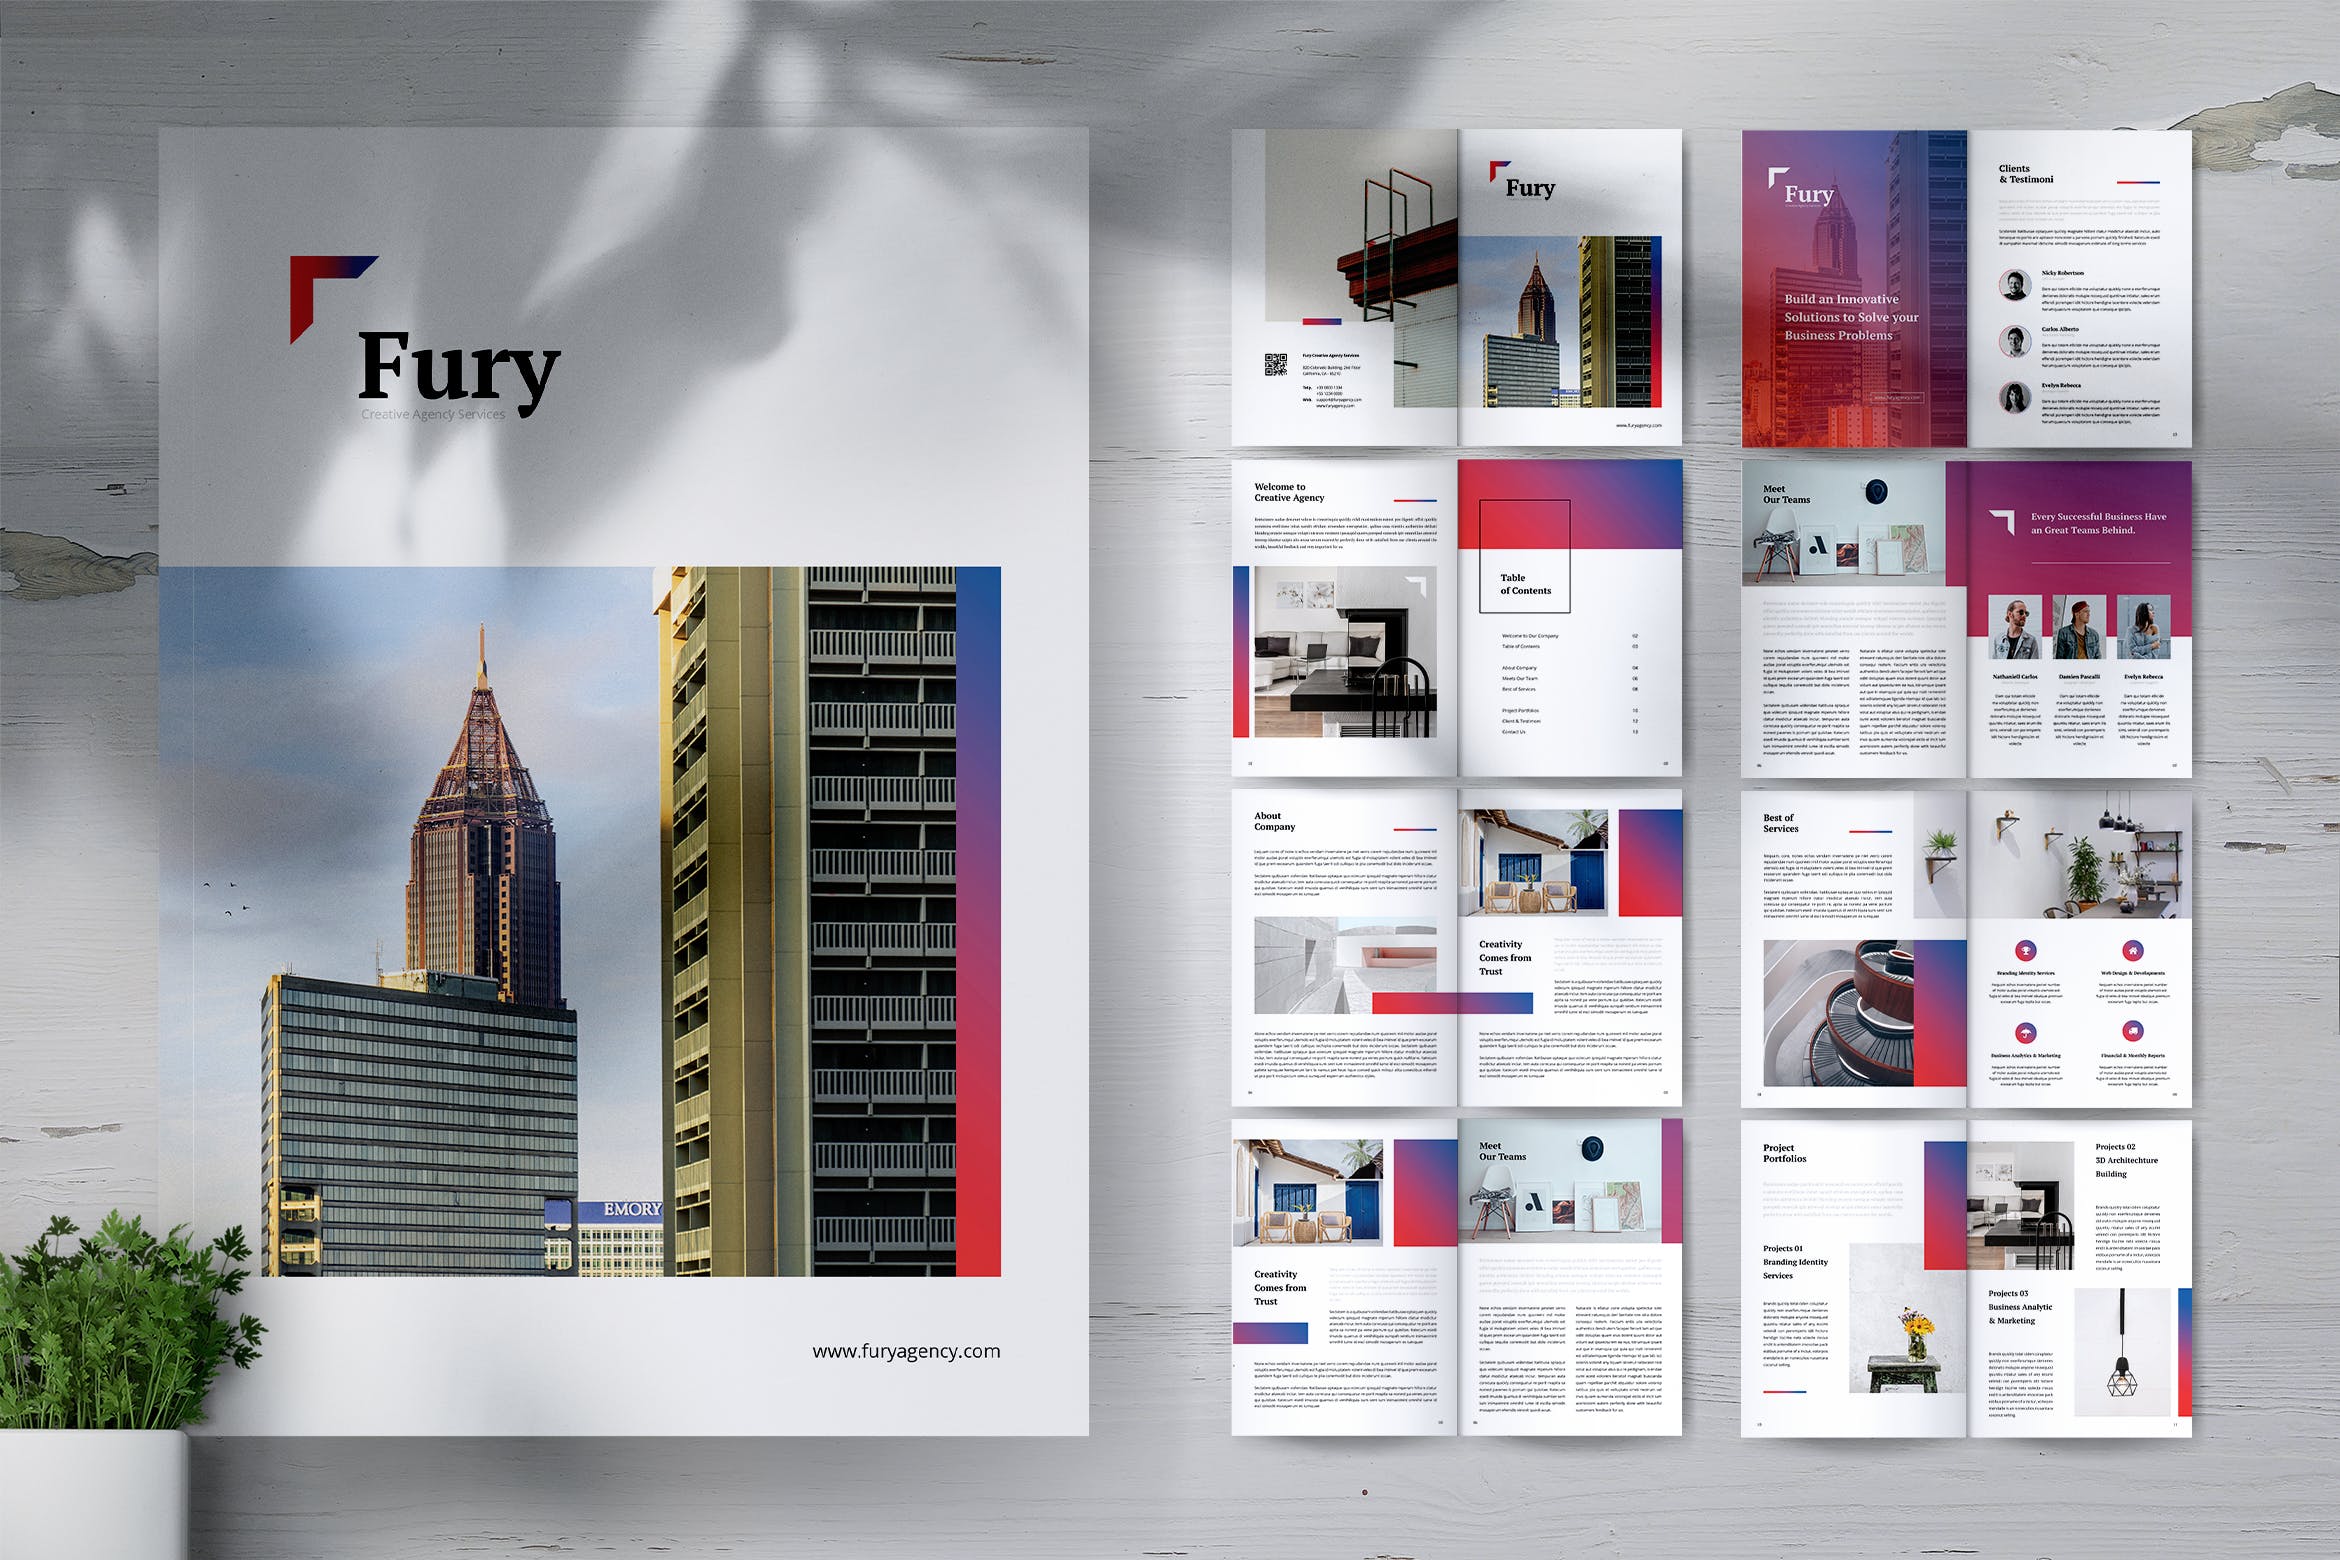 创意代理公司简介&案例介绍企业画册设计模板 FURY Creative Agency Company Profile Brochures插图